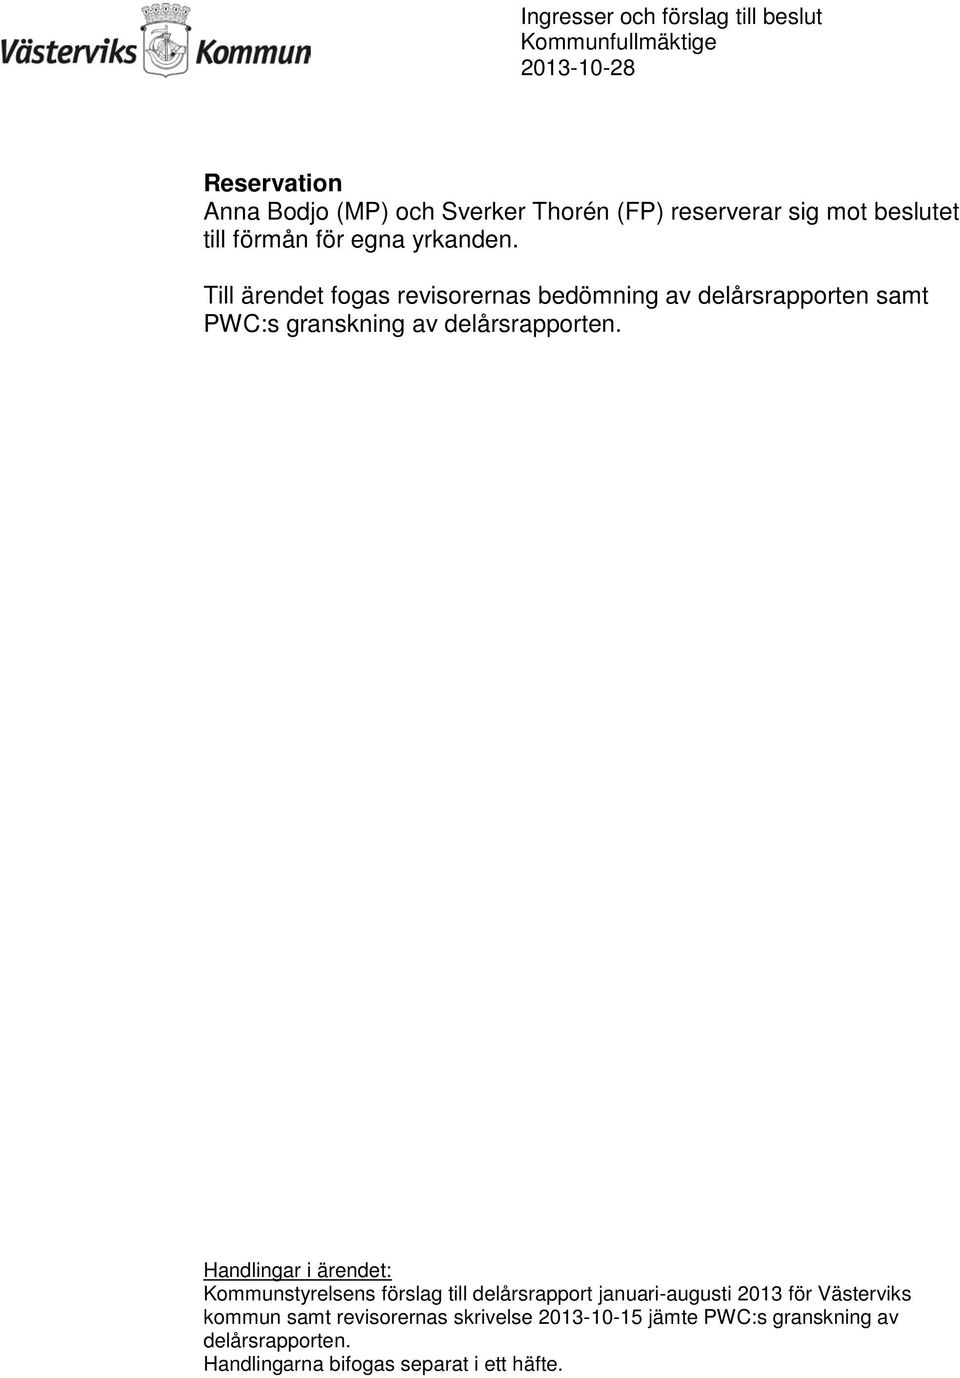 Handlingar i ärendet: Kommunstyrelsens förslag till delårsrapport januari-augusti 2013 för Västerviks kommun